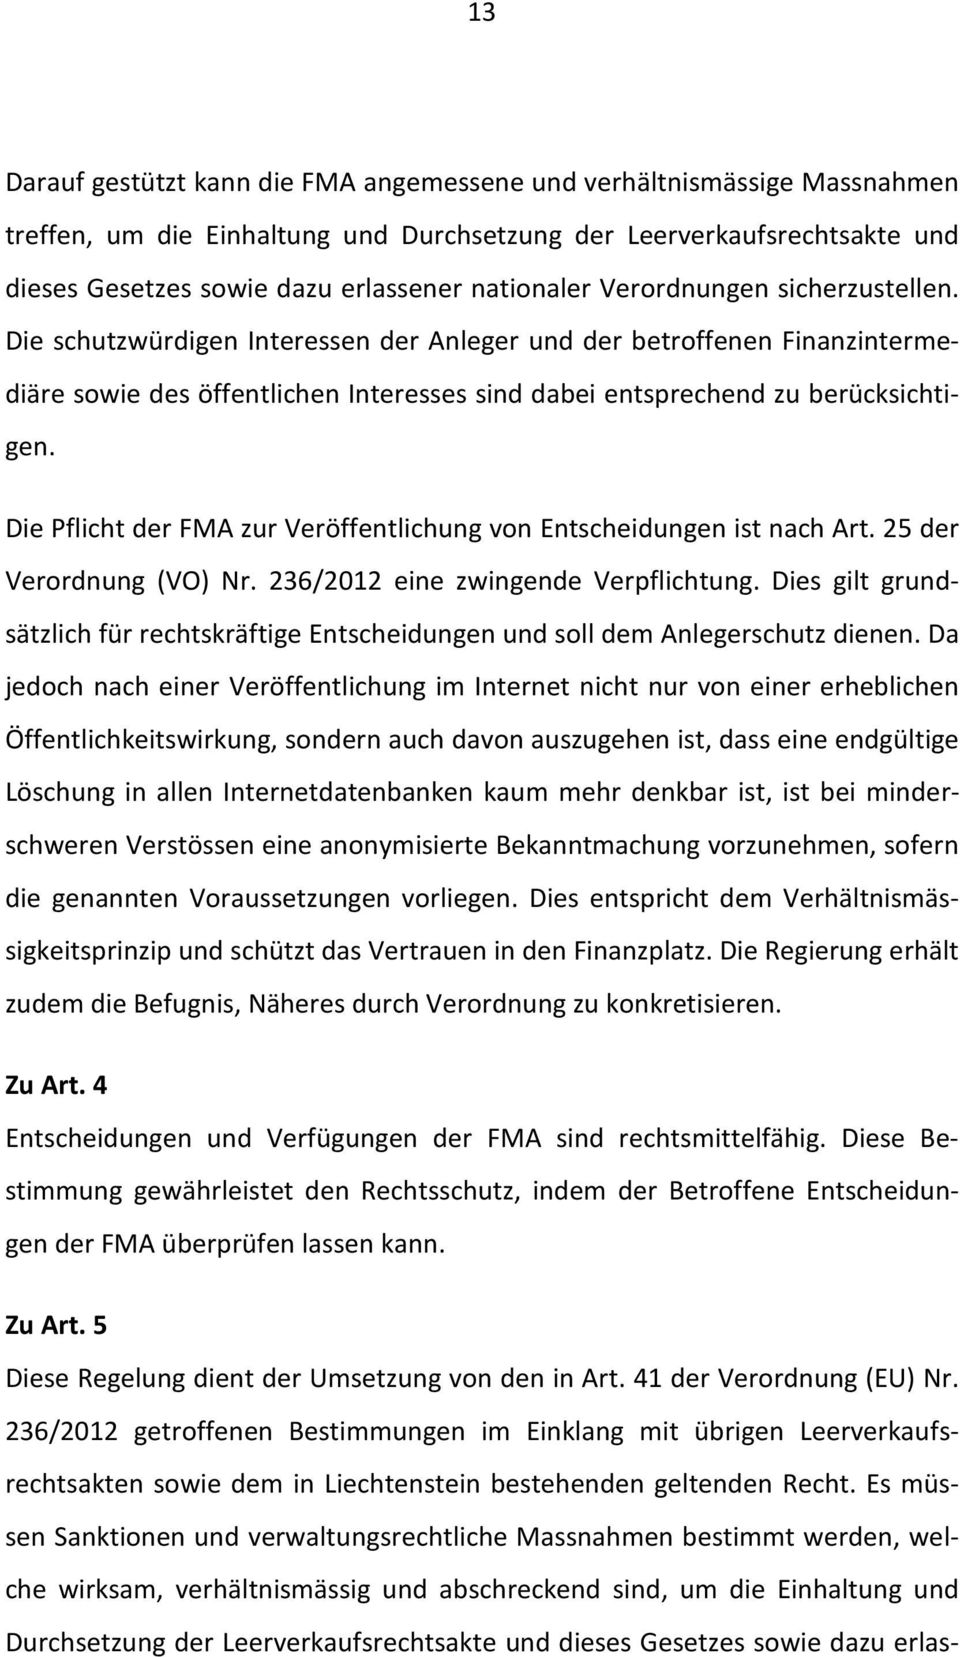 Die Pflicht der FMA zur Veröffentlichung von Entscheidungen ist nach Art. 25 der Verordnung (VO) Nr. 236/2012 eine zwingende Verpflichtung.